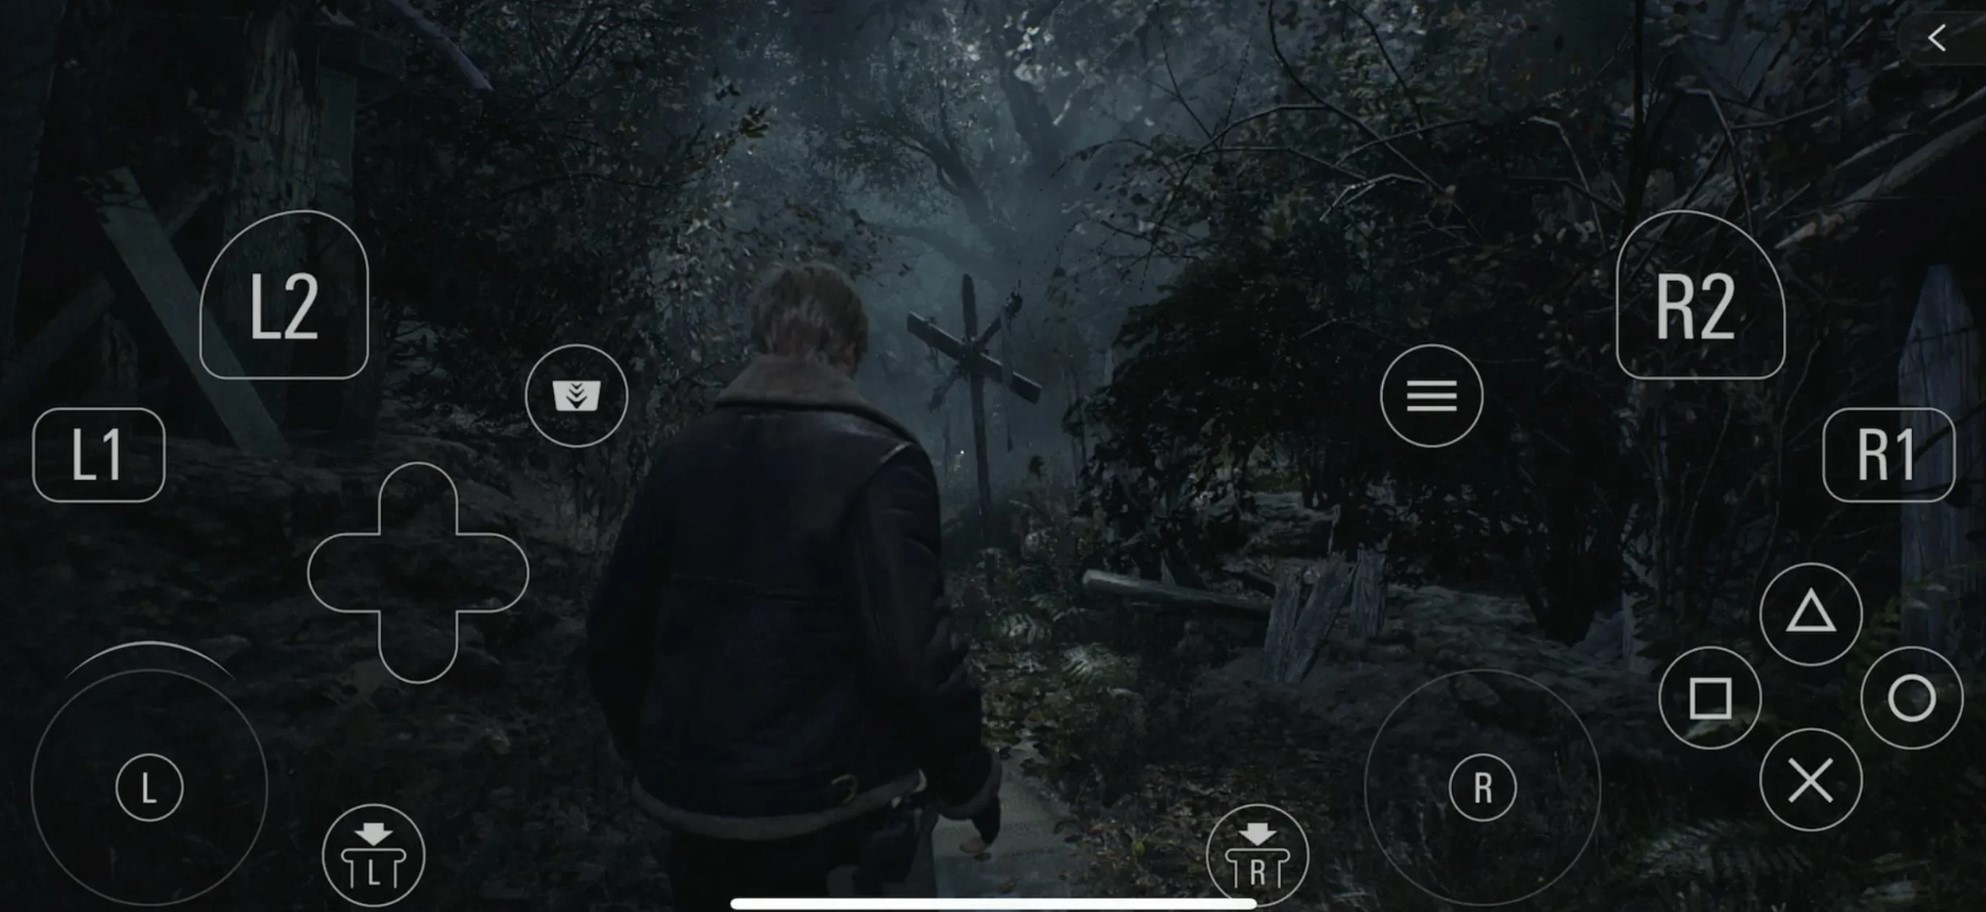 Các nút ảo rối rắm khi chơi Resident Evil trên iPhone.jpg